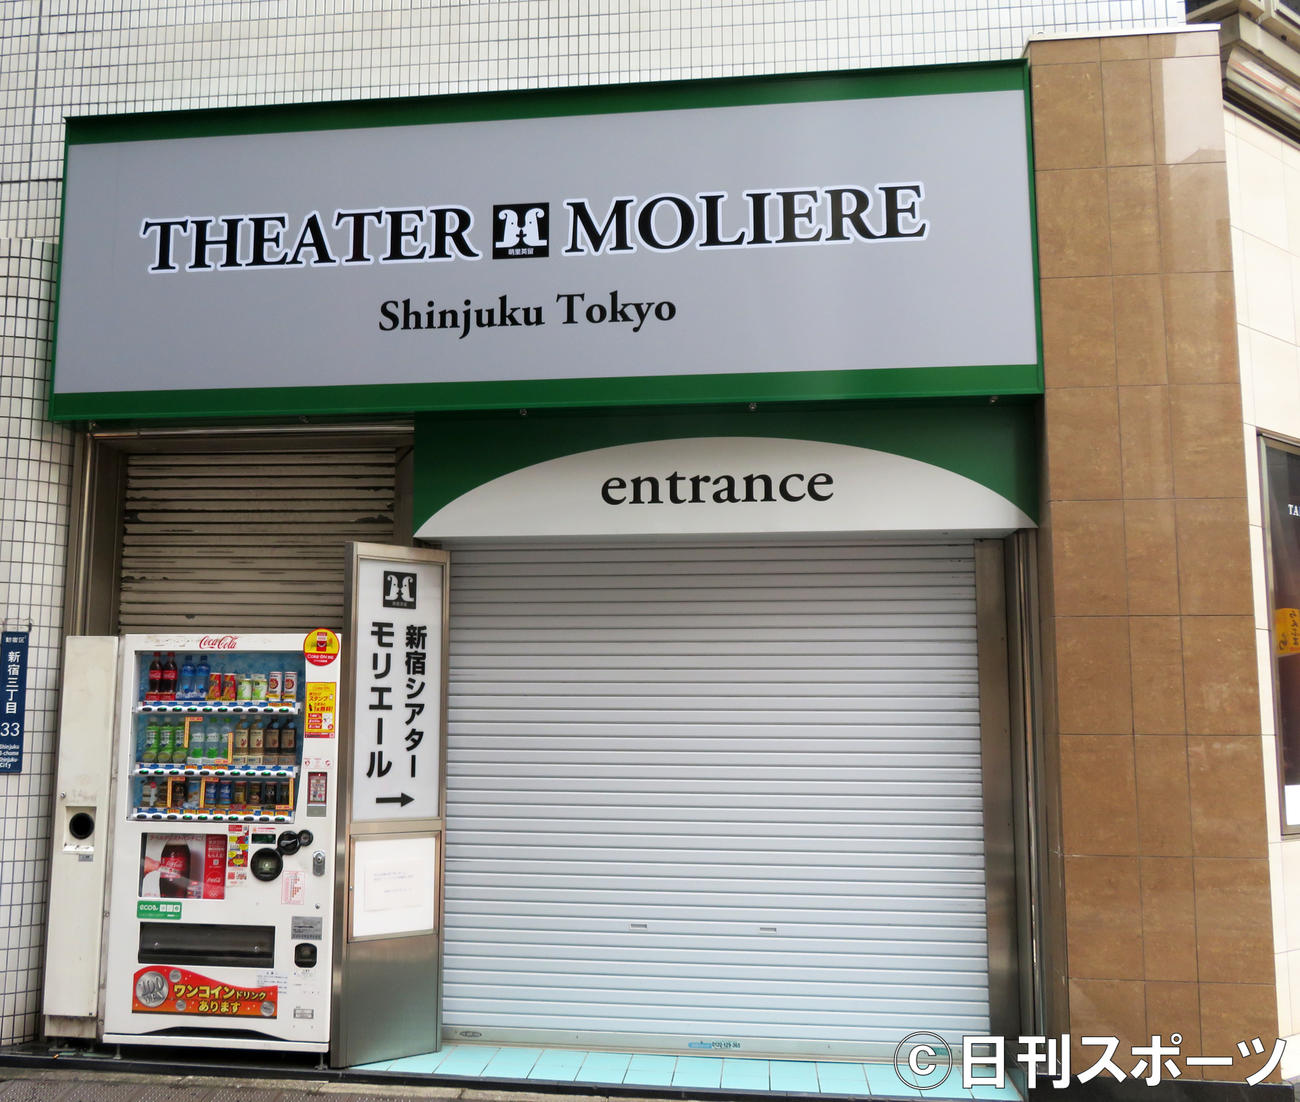 新型コロナウイルスのクラスターが発生した舞台「THE★JINRO」が上演された新宿シアターモリエール